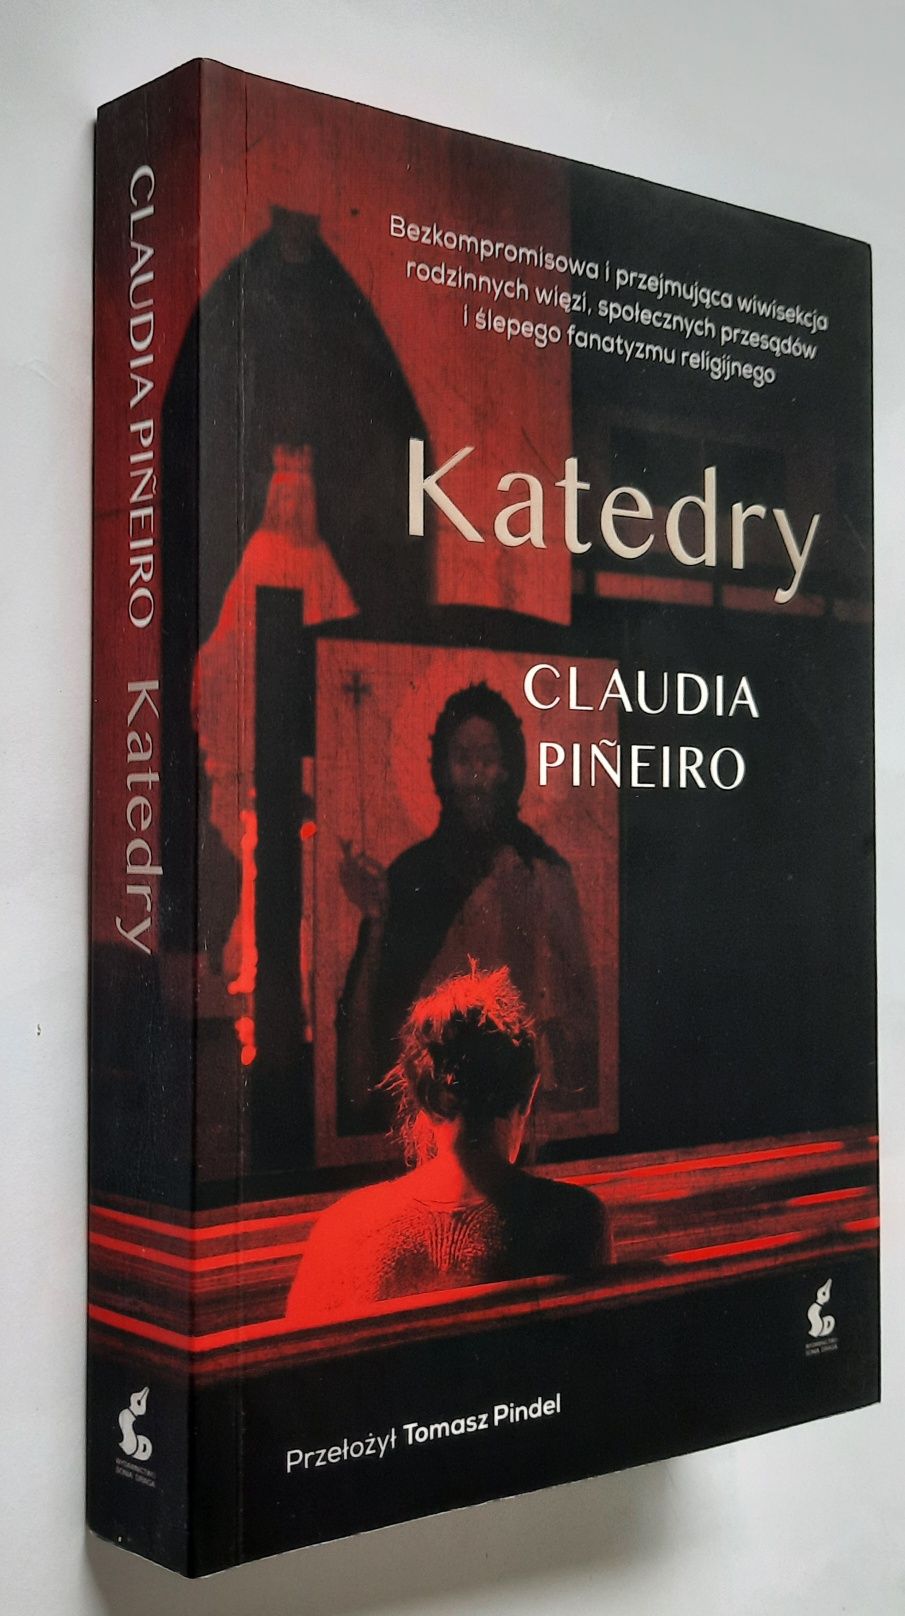 Katedry - Claudia Pineiro